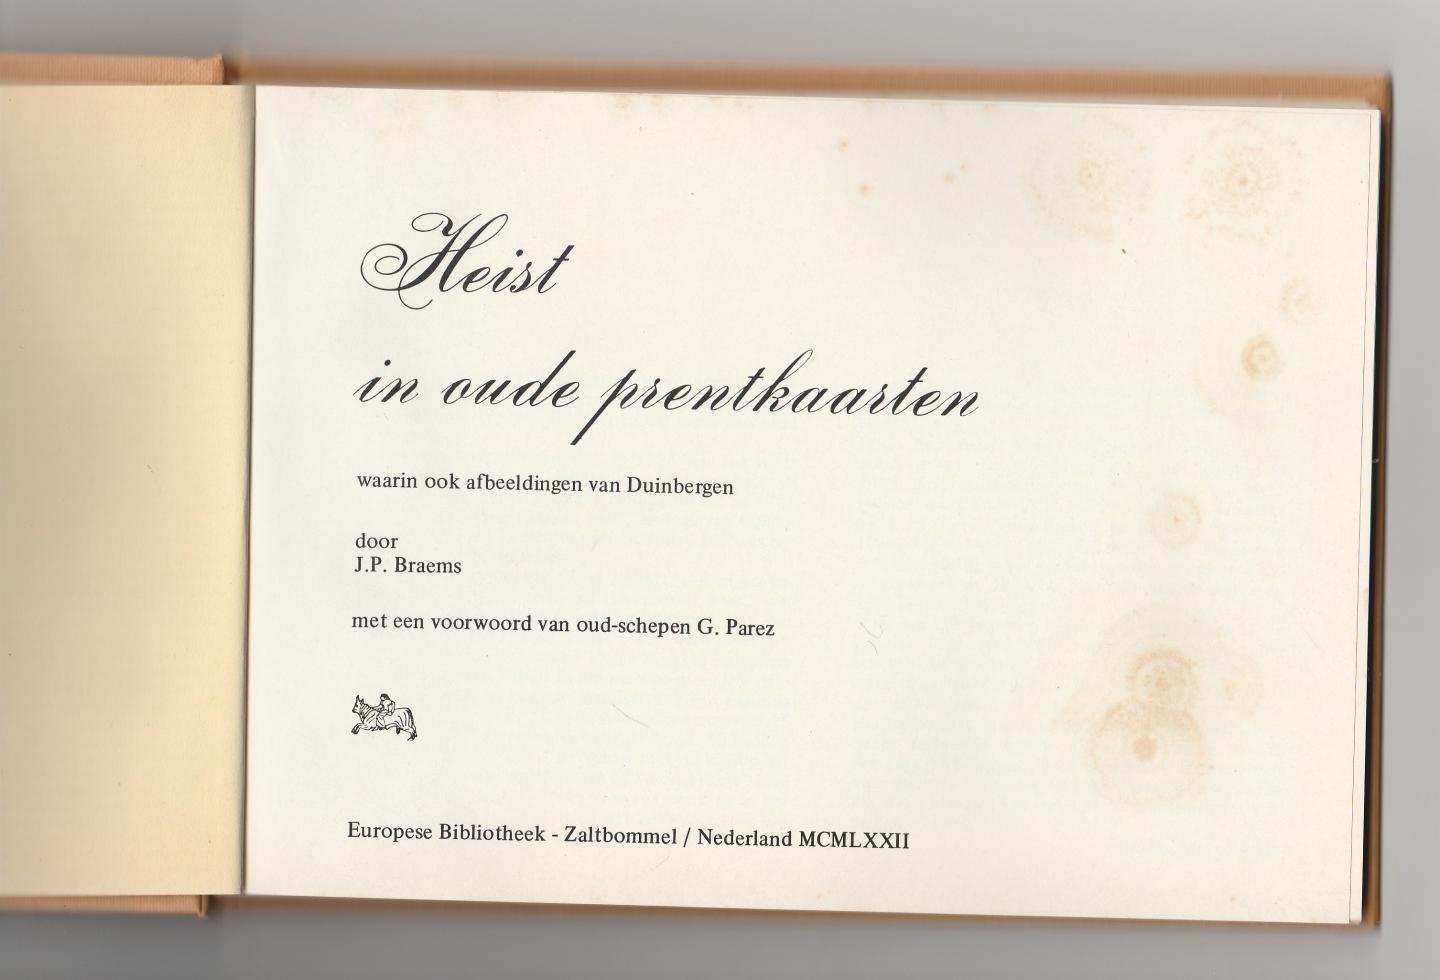 Braems, J.P. - Heist in oude prentkaarten, waarin ook afbeeldingen van Duinbergen